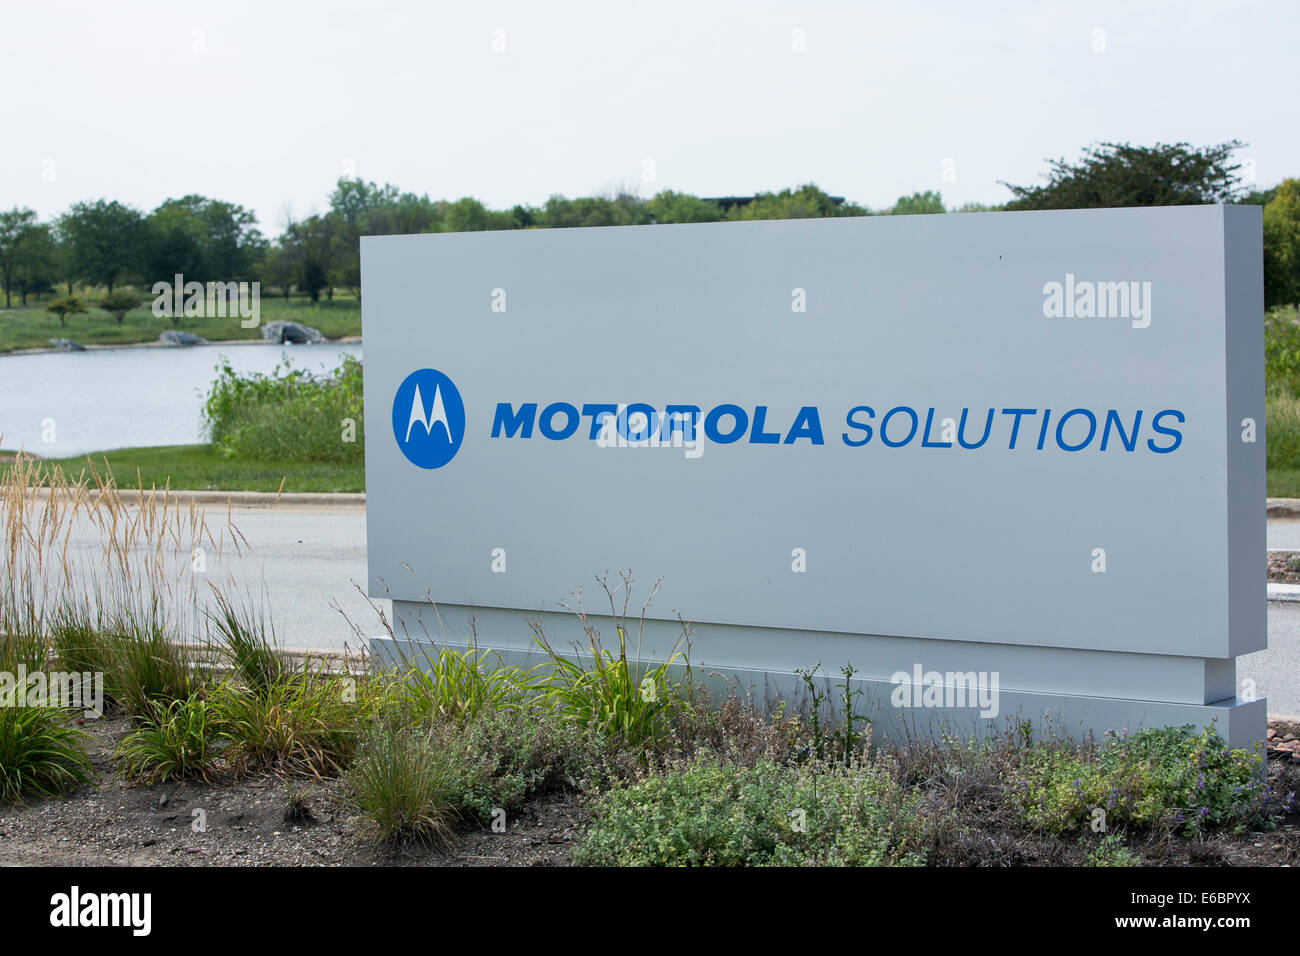 Le siège social de Motorola Solutions à Schaumburg, Illinois. Banque D'Images